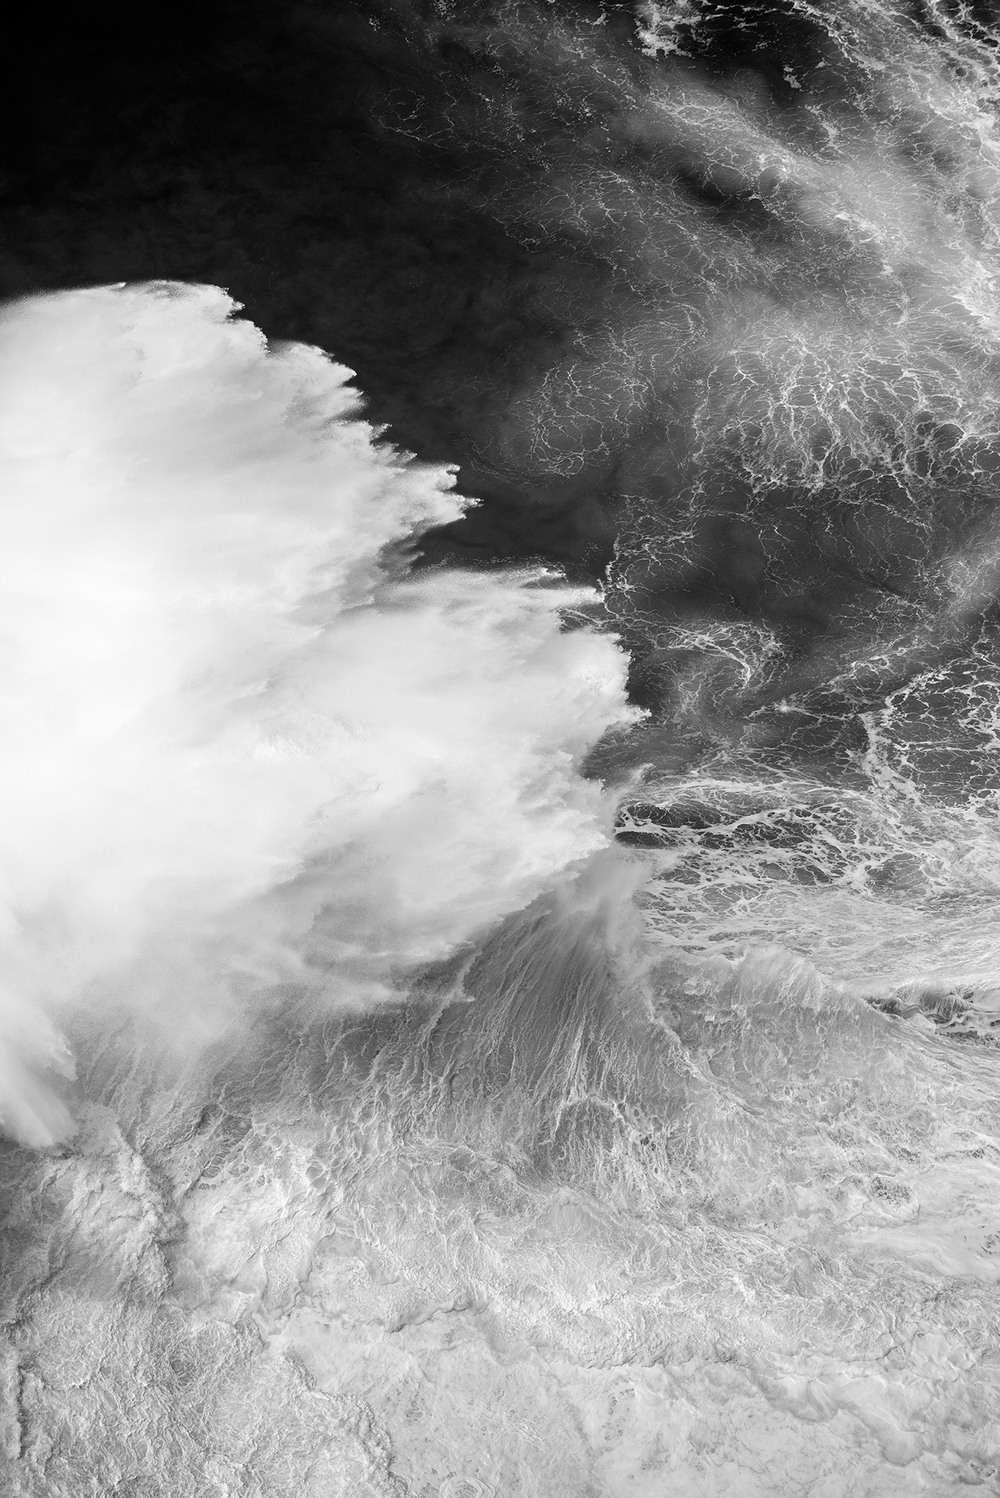 Красота океанских волн на снимках Люка Шадболта